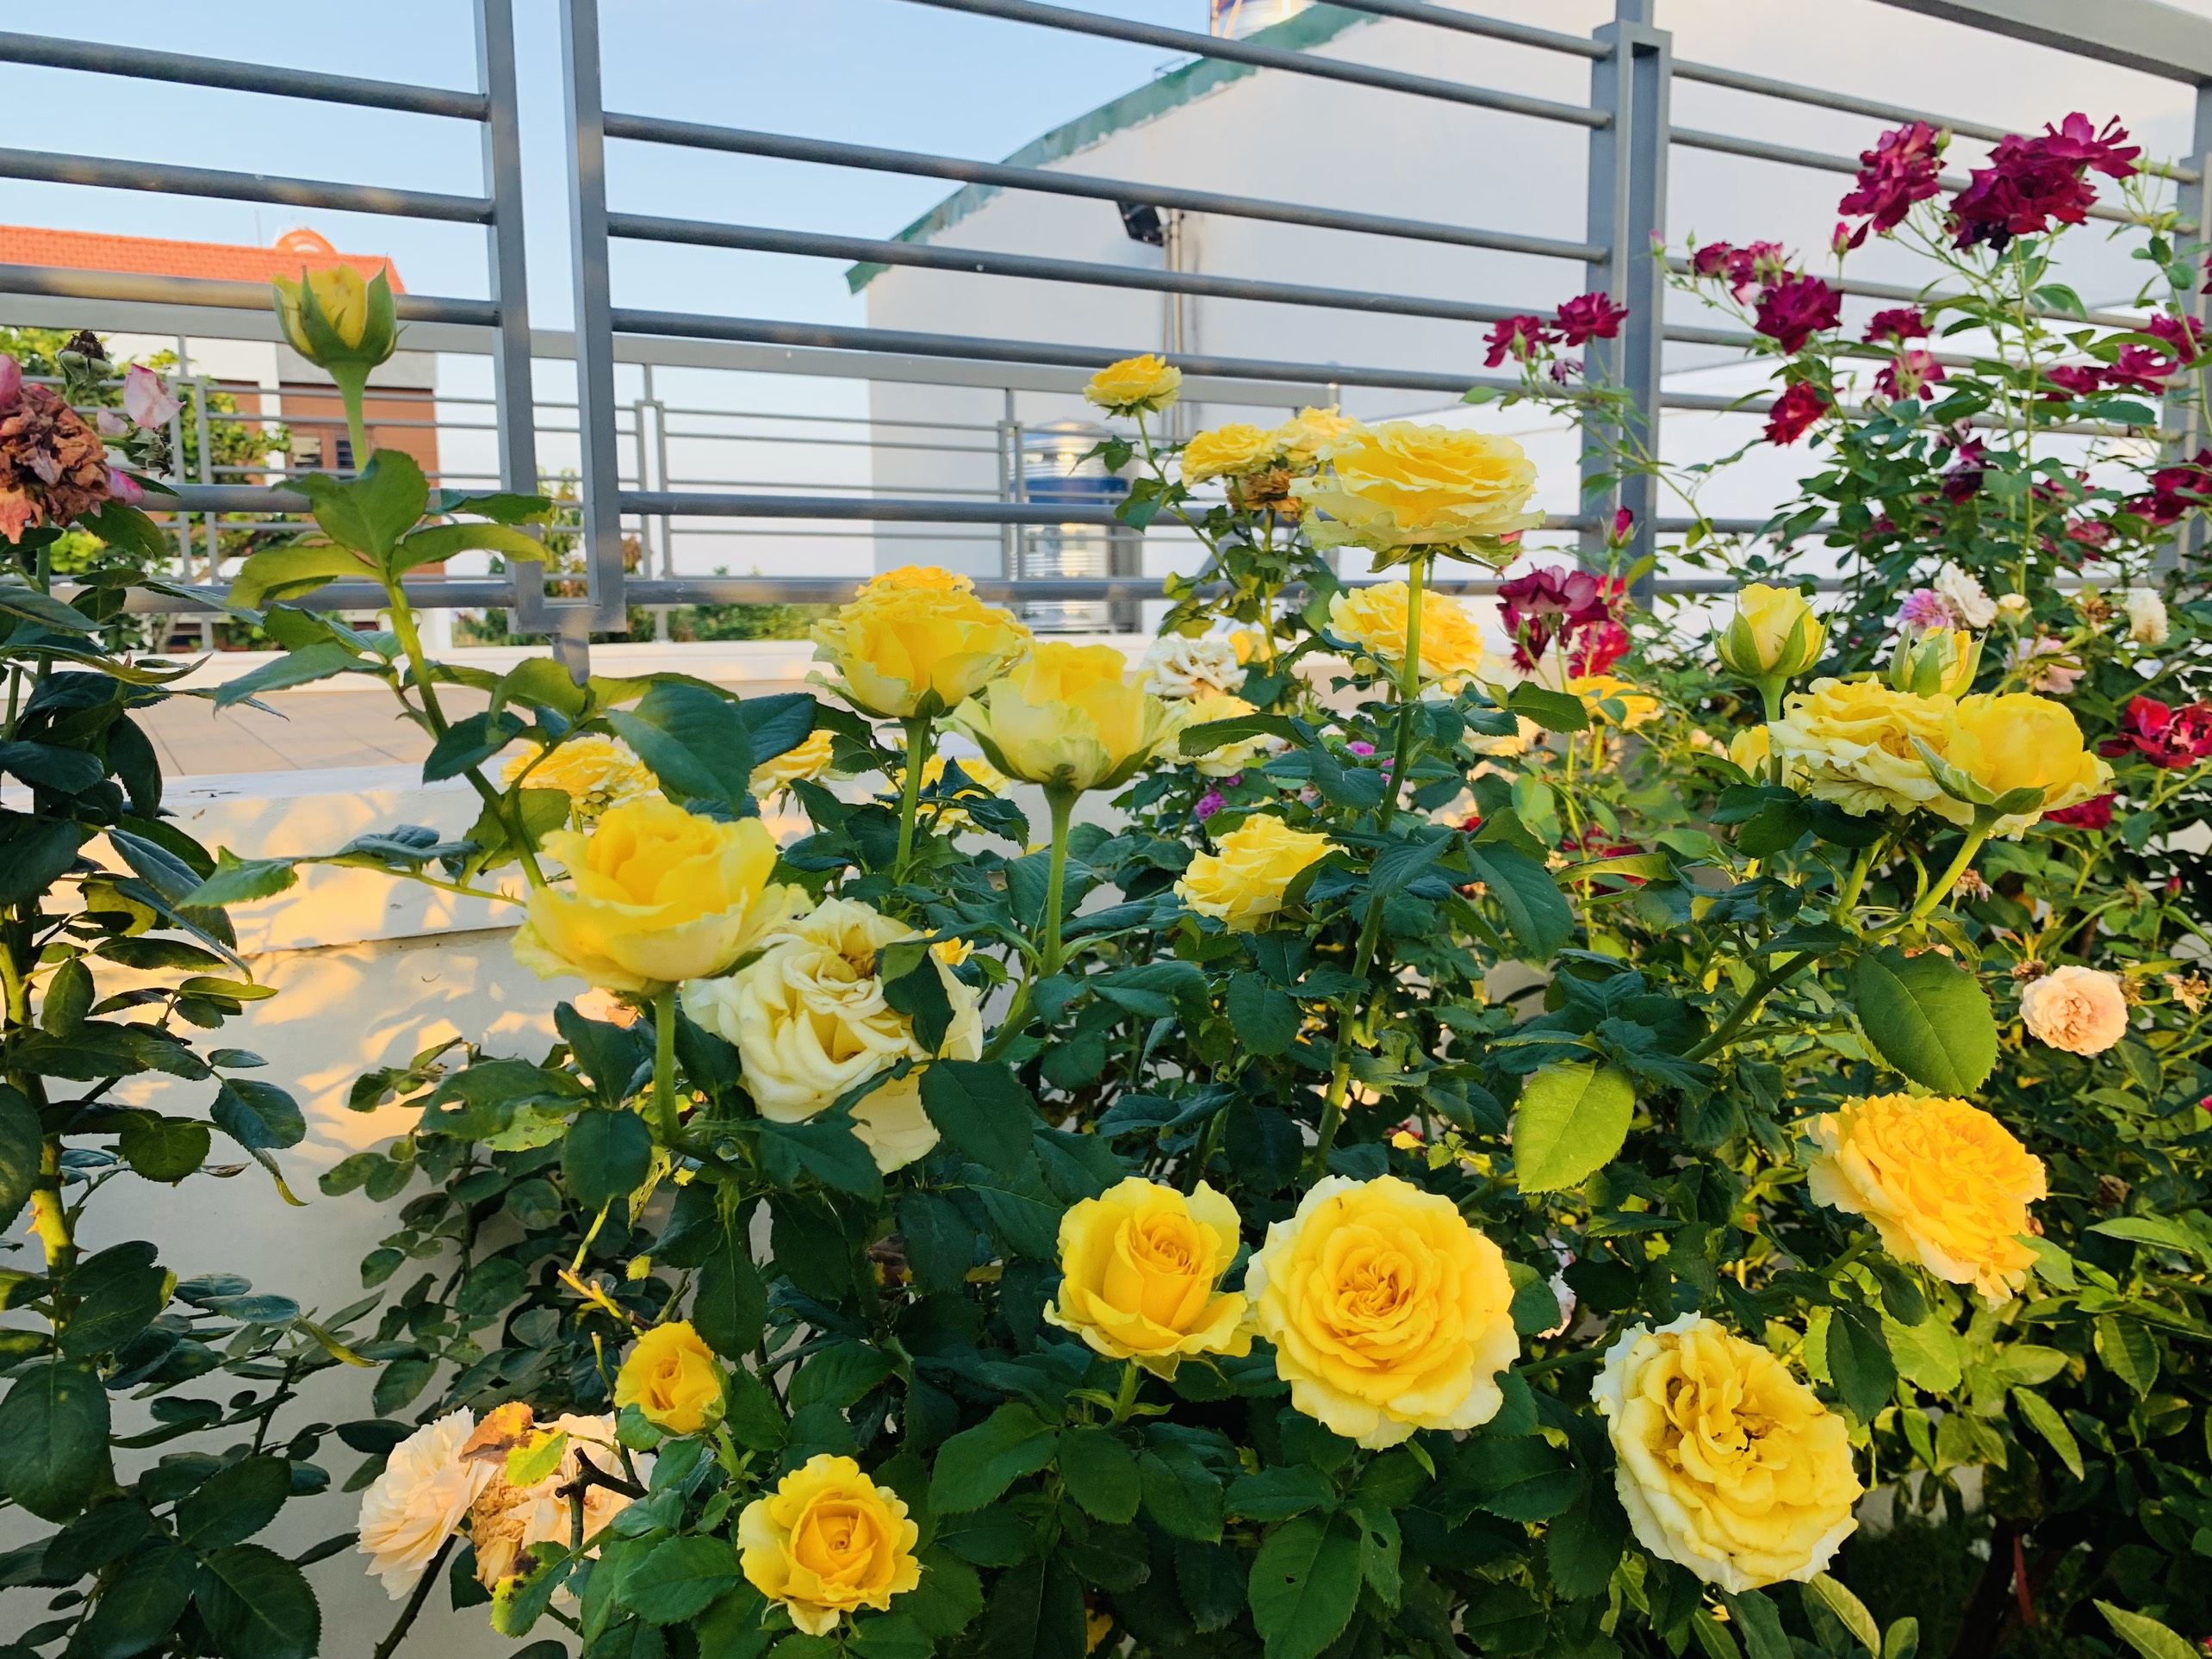 Bạn đang tìm kiếm vườn hoa hồng đẹp nhất để chiêm ngưỡng sự tinh tế và quyến rũ? Hãy nhấn vào hình ảnh để khám phá khoảng không gian đầy màu sắc và hương thơm nồng nàn của những bông hoa hồng tuyệt đẹp đang chờ đón bạn đến thăm.